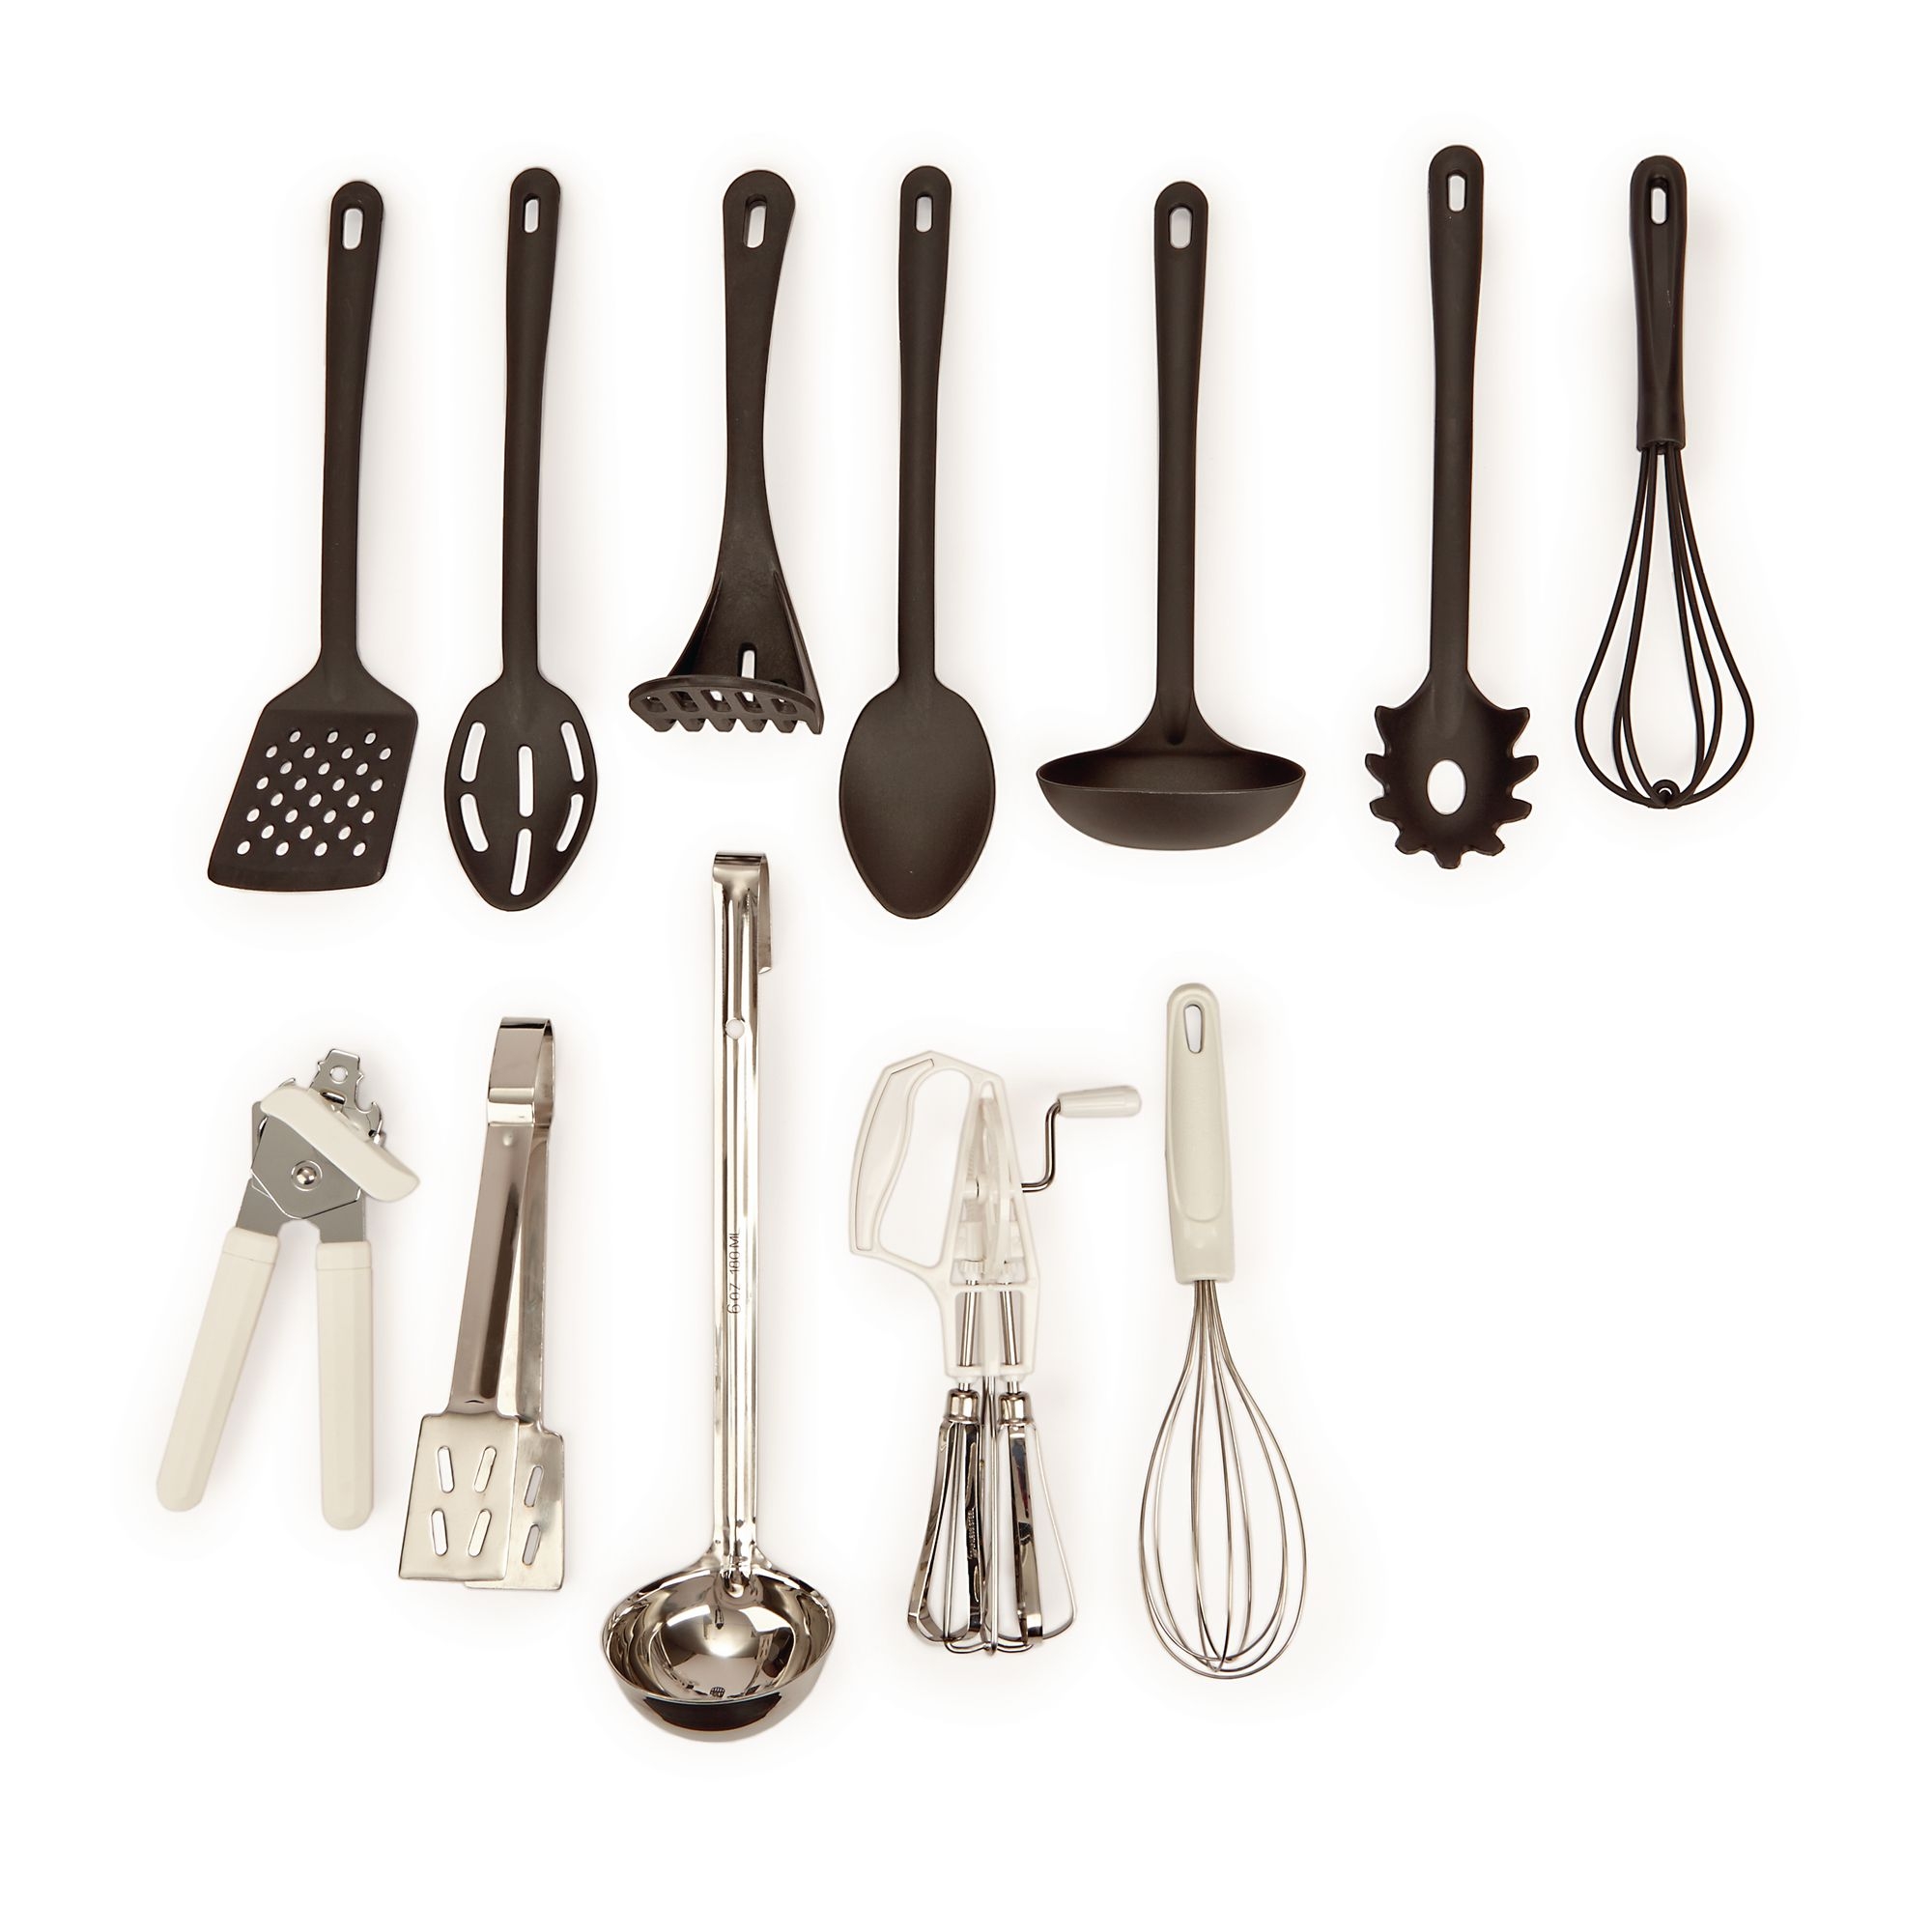 Non-Stick Kitchen Tools - Potato masher